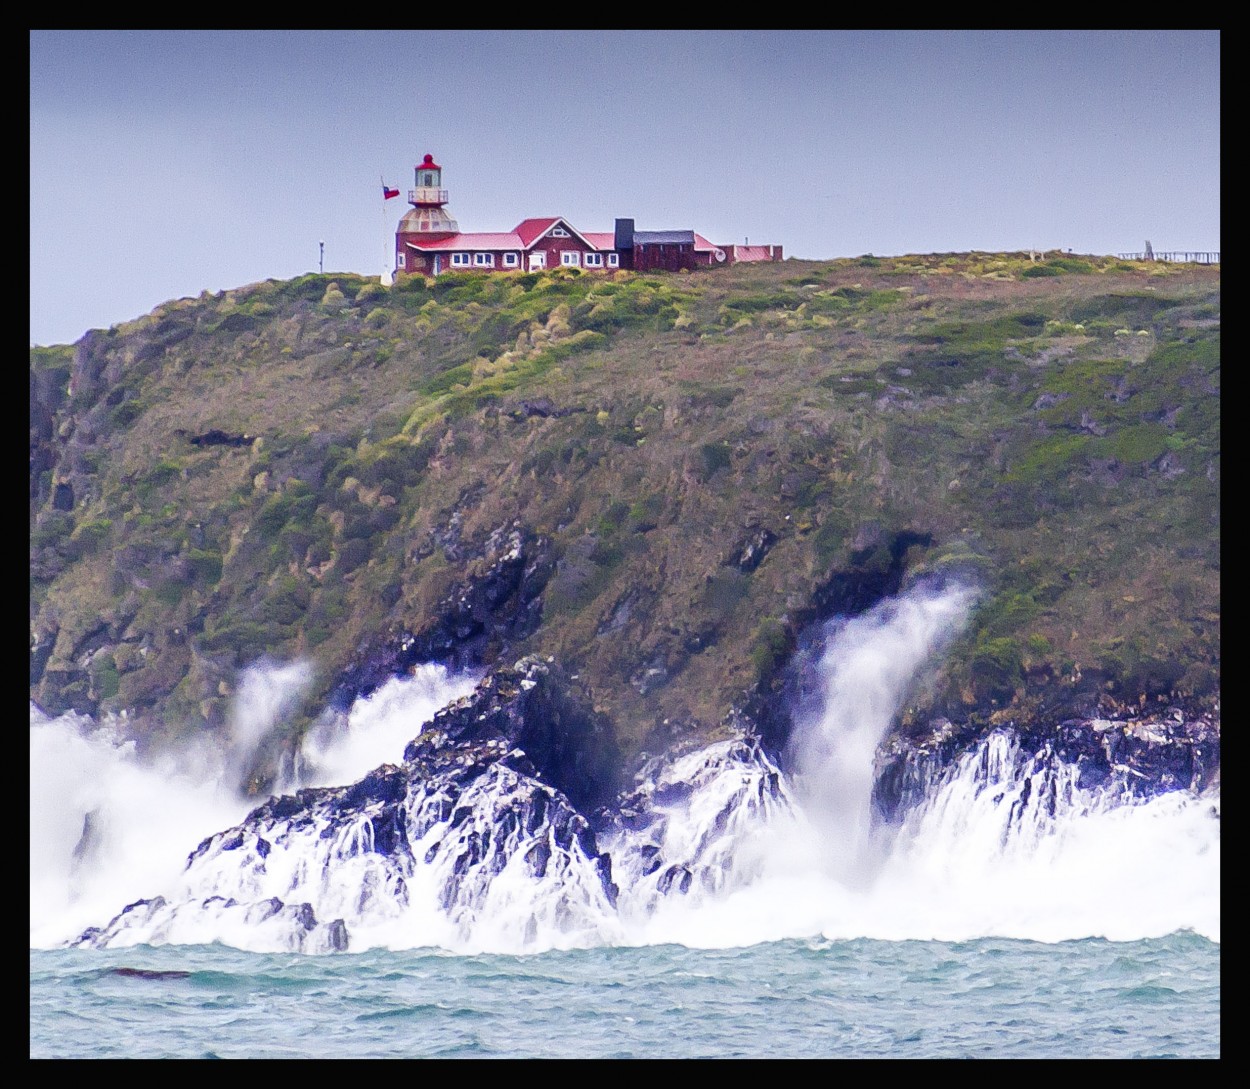 "Faro de Cabo de hornos - Cape Horn" de Ricardo Wychlo